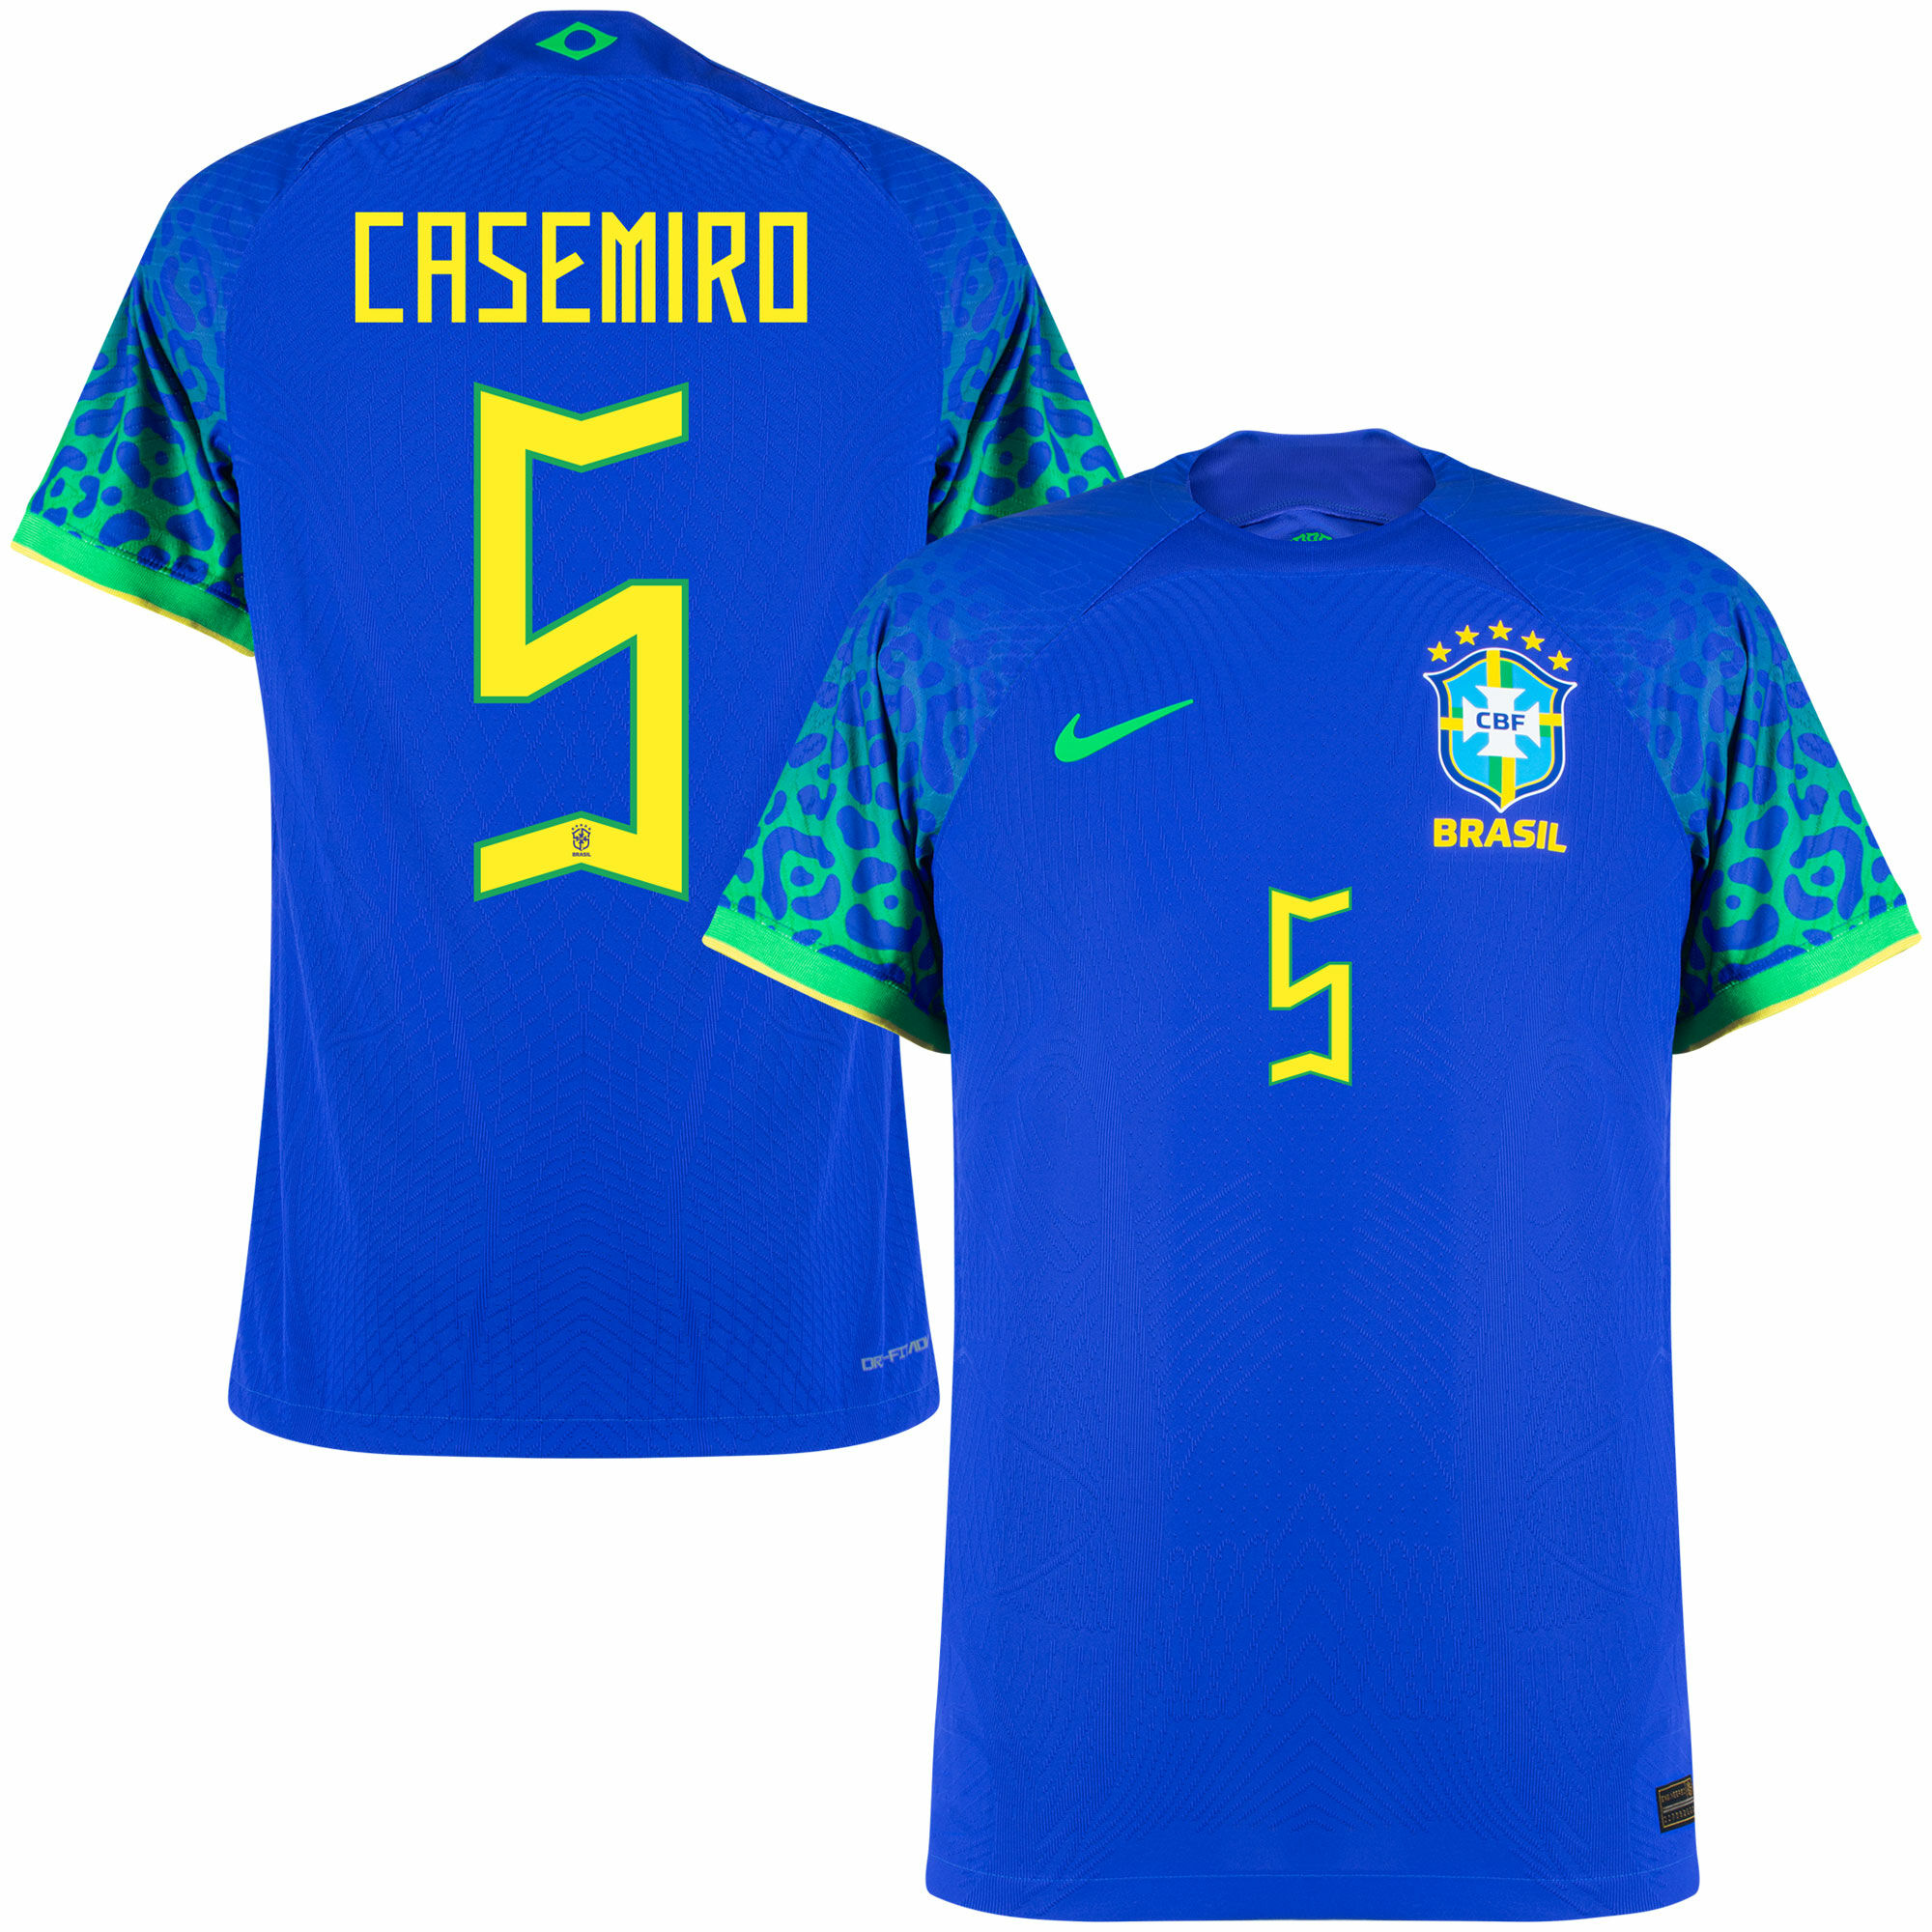 Brazílie - Dres fotbalový "Match" - Casemiro, oficiální potisk, číslo 5, sezóna 2022/23, Dri-FIT ADV, modrý, venkovní